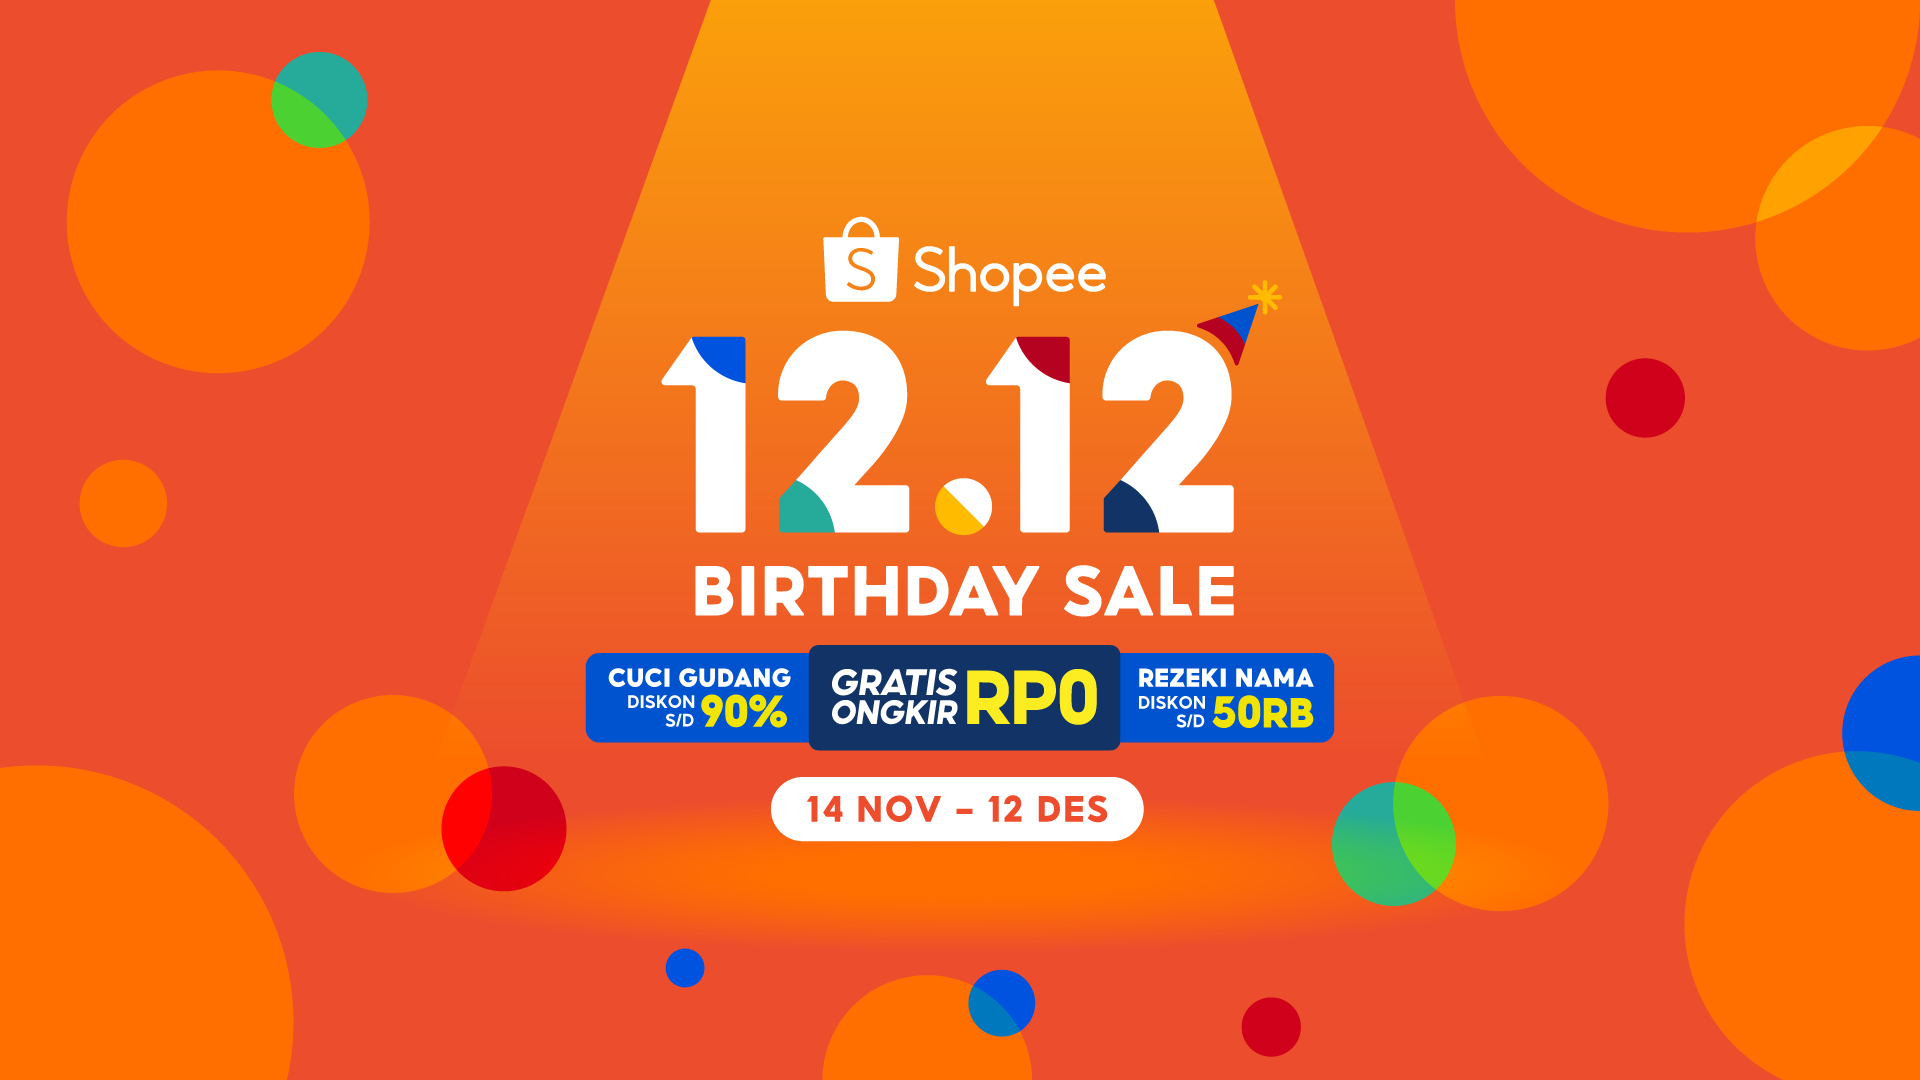 Momen Akhir Tahun, Berikut Promo 12.12 Birthday Sale Shopee Live, Ada Berbagai Diskon Murah